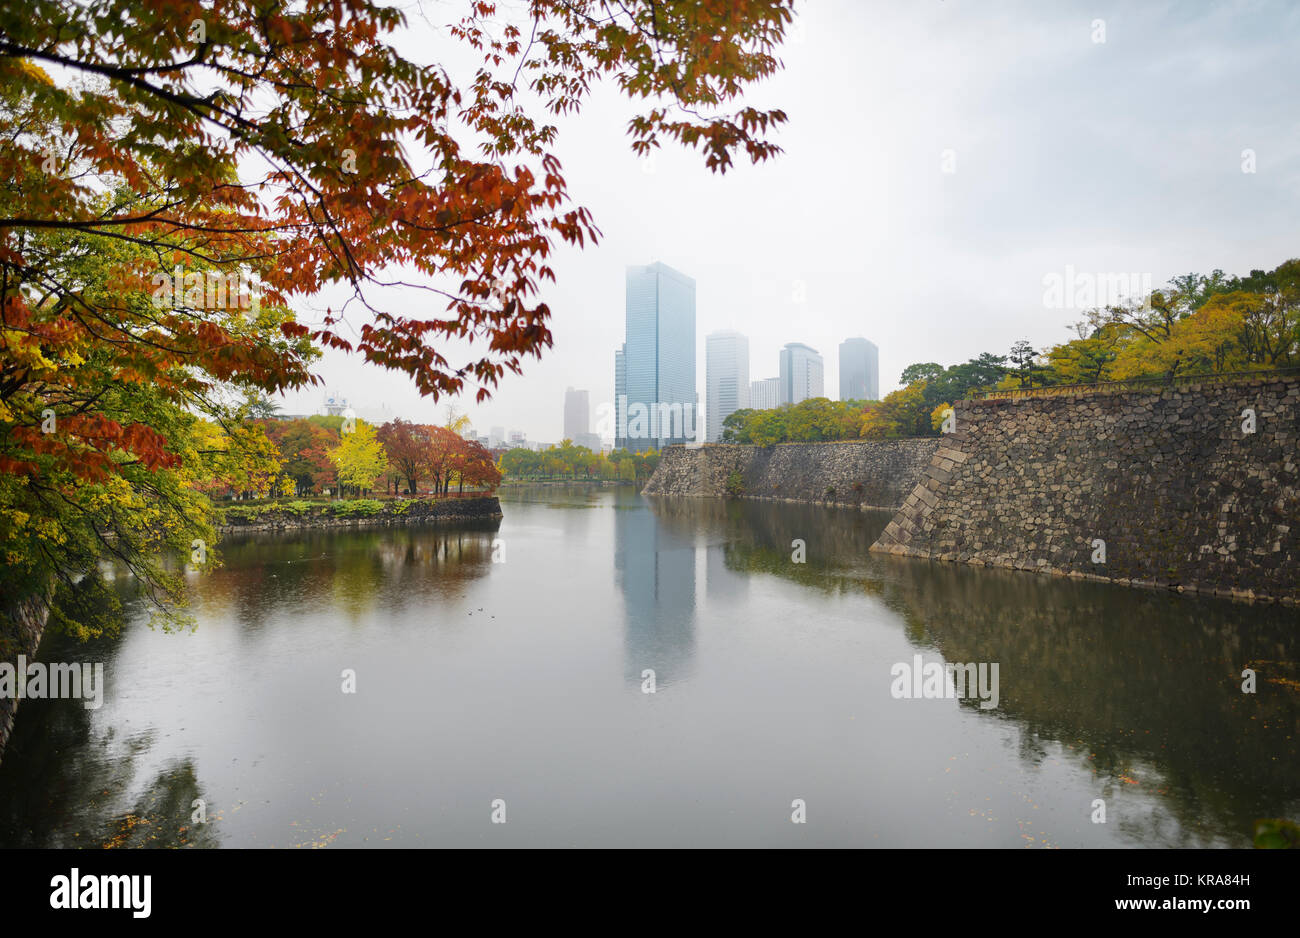 Le centre-ville d'Osaka Chuo-ku financial distric hautes tours, tour de cristal et d'autres bâtiments vue depuis Osaka Castle Park moat dans le brouillard d'automne Banque D'Images